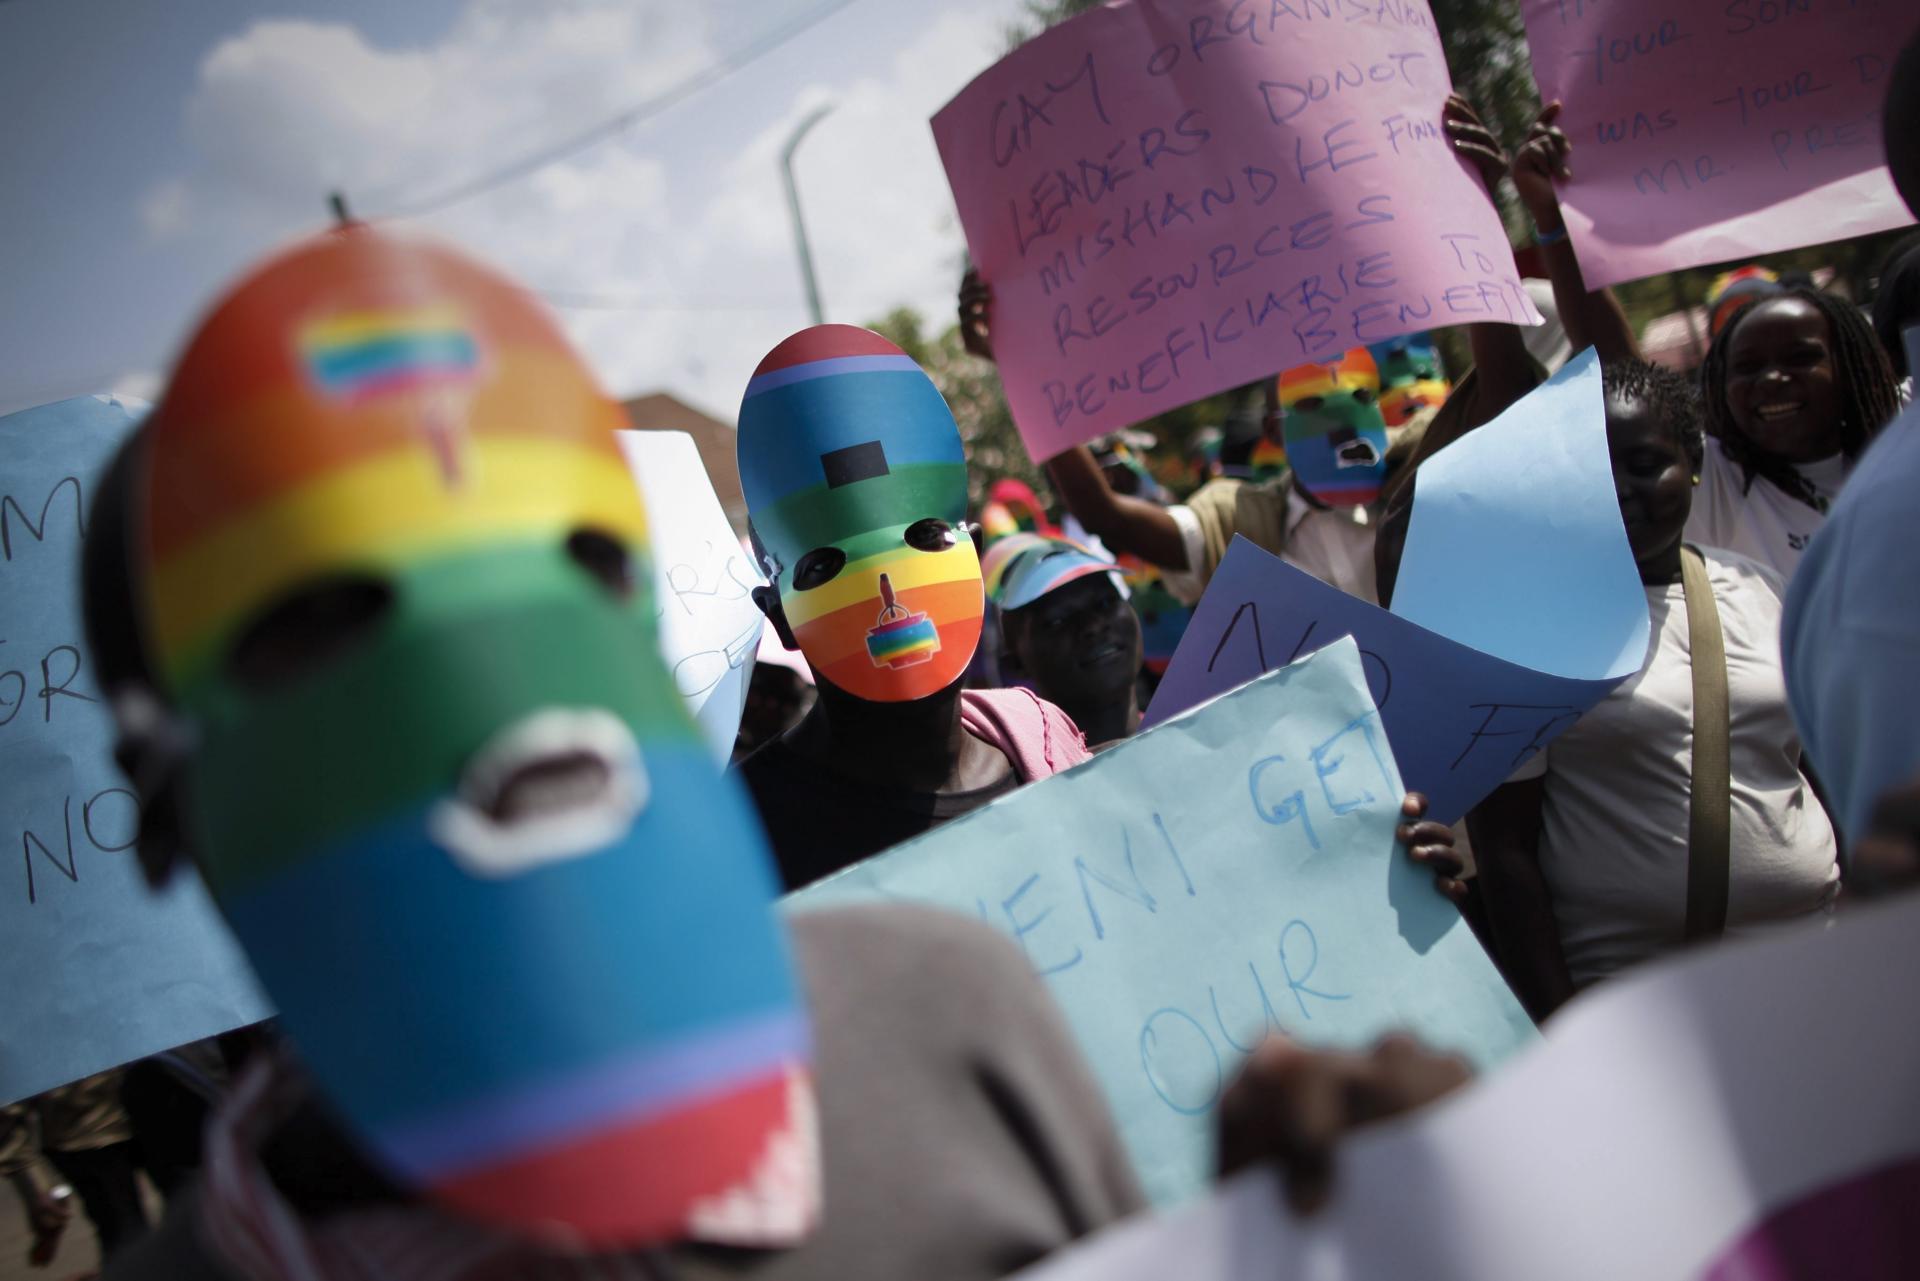 Members of the gay community protest before the High Commission of Uganda in Nairobi, Kenya, on February 10, 2014. EFE FILE/Dai Kurokawa
